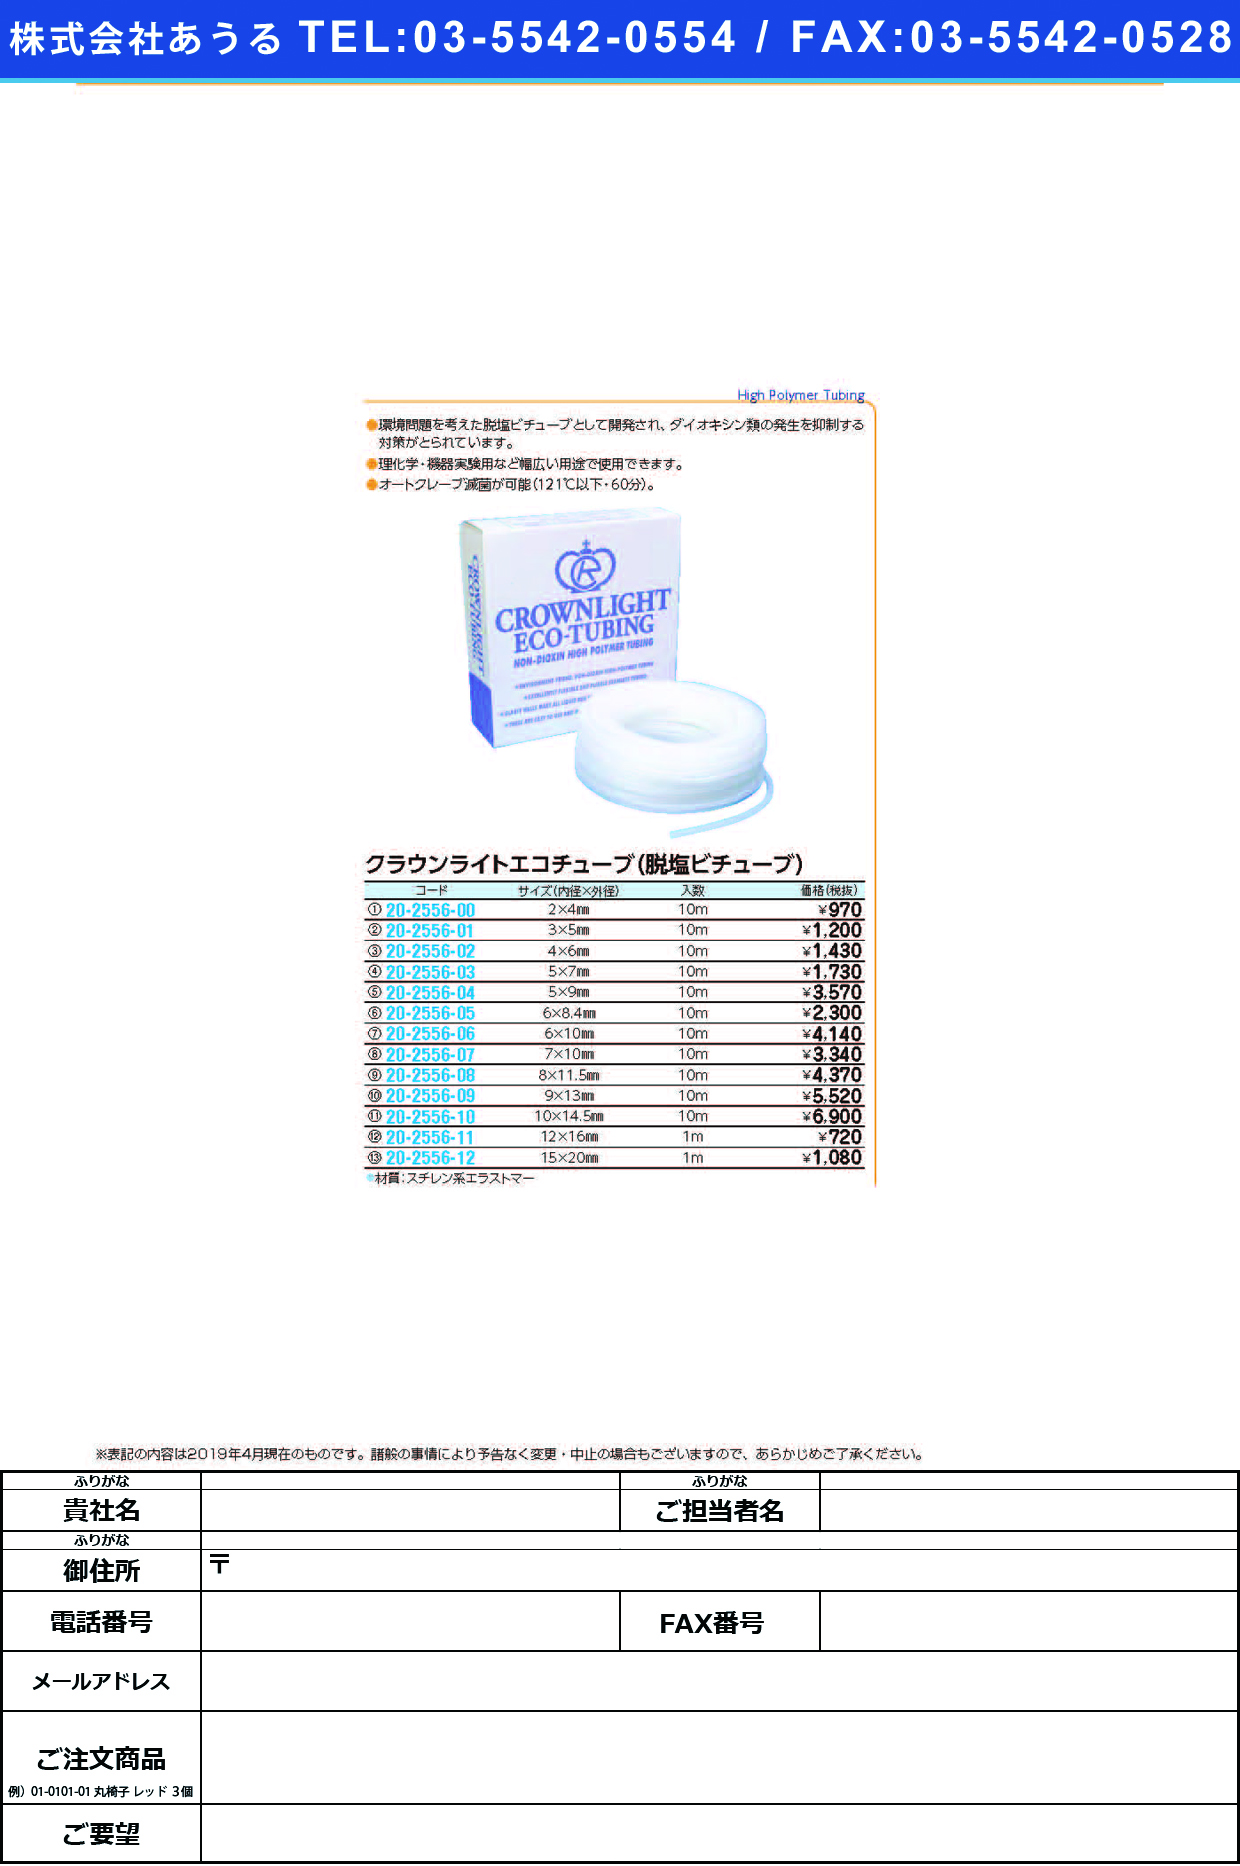 (20-2556-04)クラウンライトエコチューブ 5.0X9.0(10Mｲﾘ) ｸﾗｳﾝﾗｲﾄｴｺﾁｭｰﾌﾞ【1袋単位】【2019年カタログ商品】